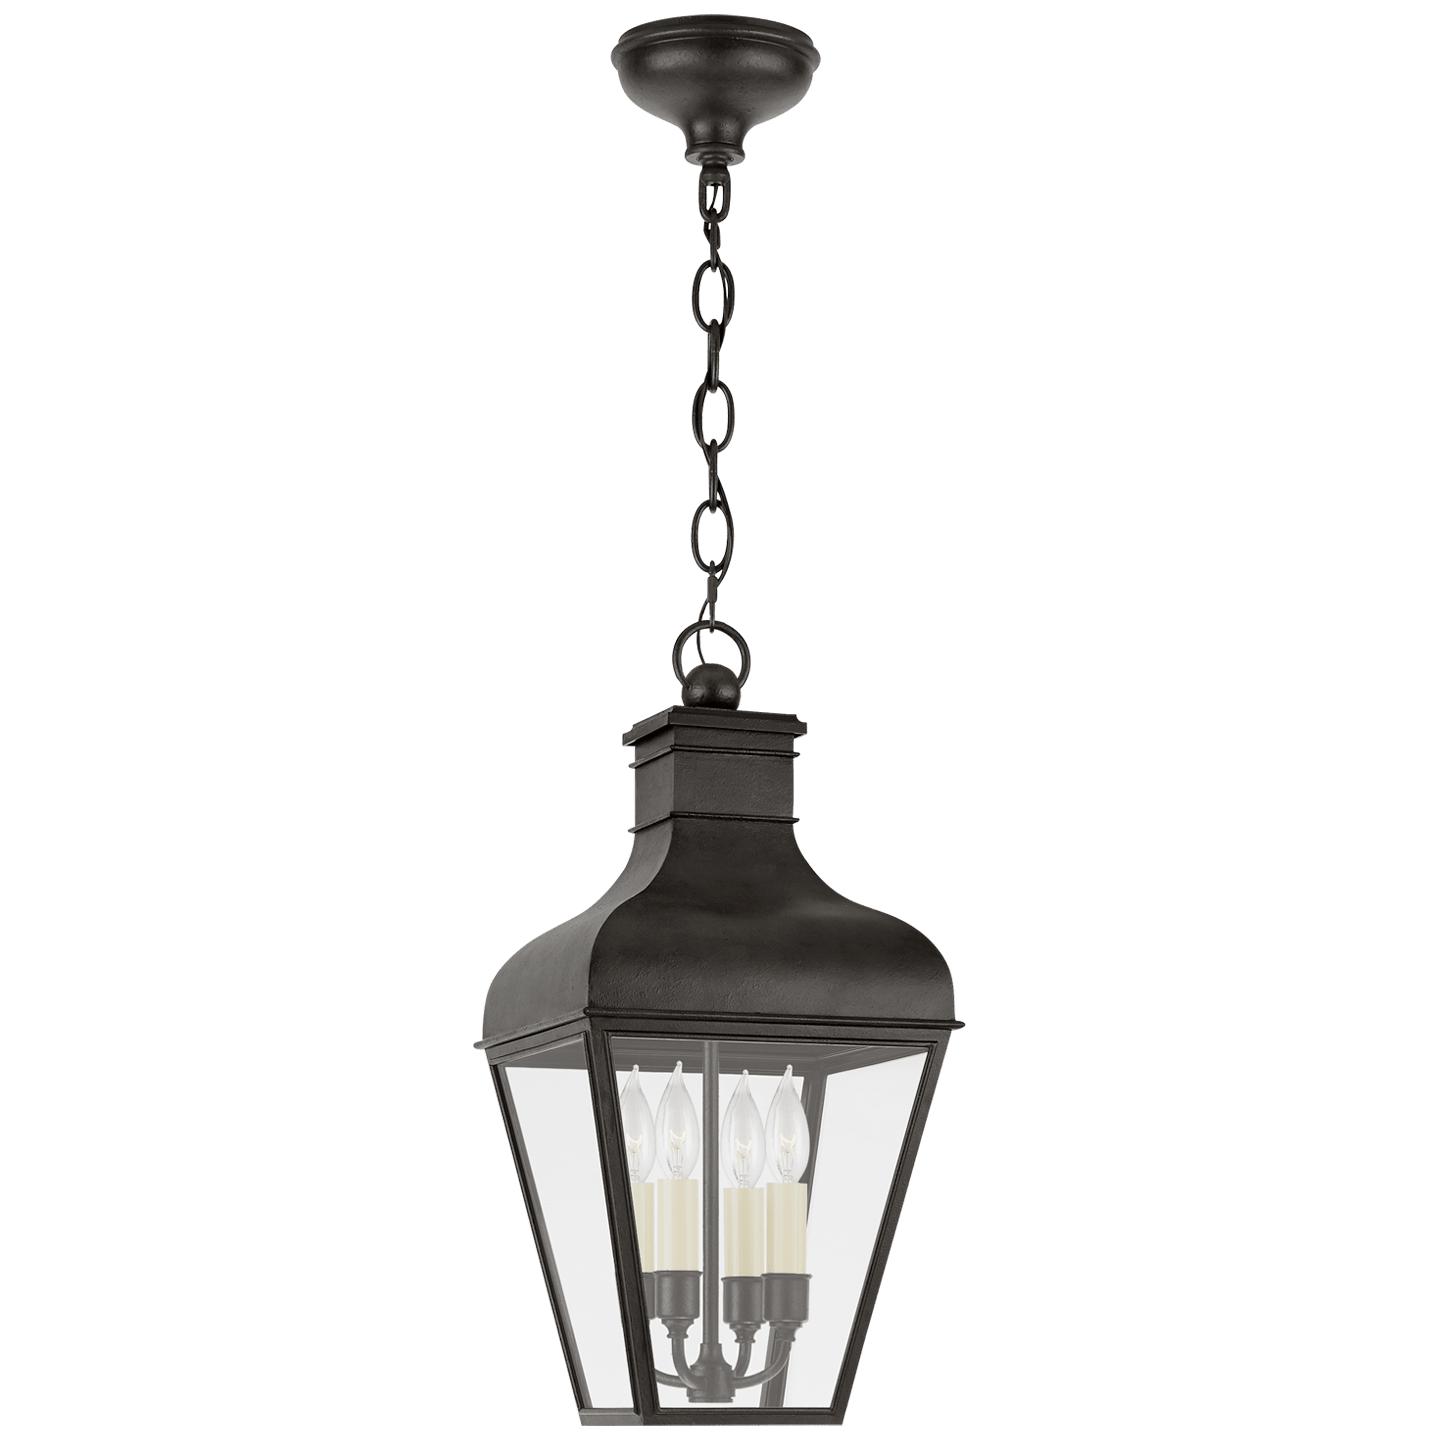 Купить Подвесной светильник Fremont Medium Hanging Lantern в интернет-магазине roooms.ru